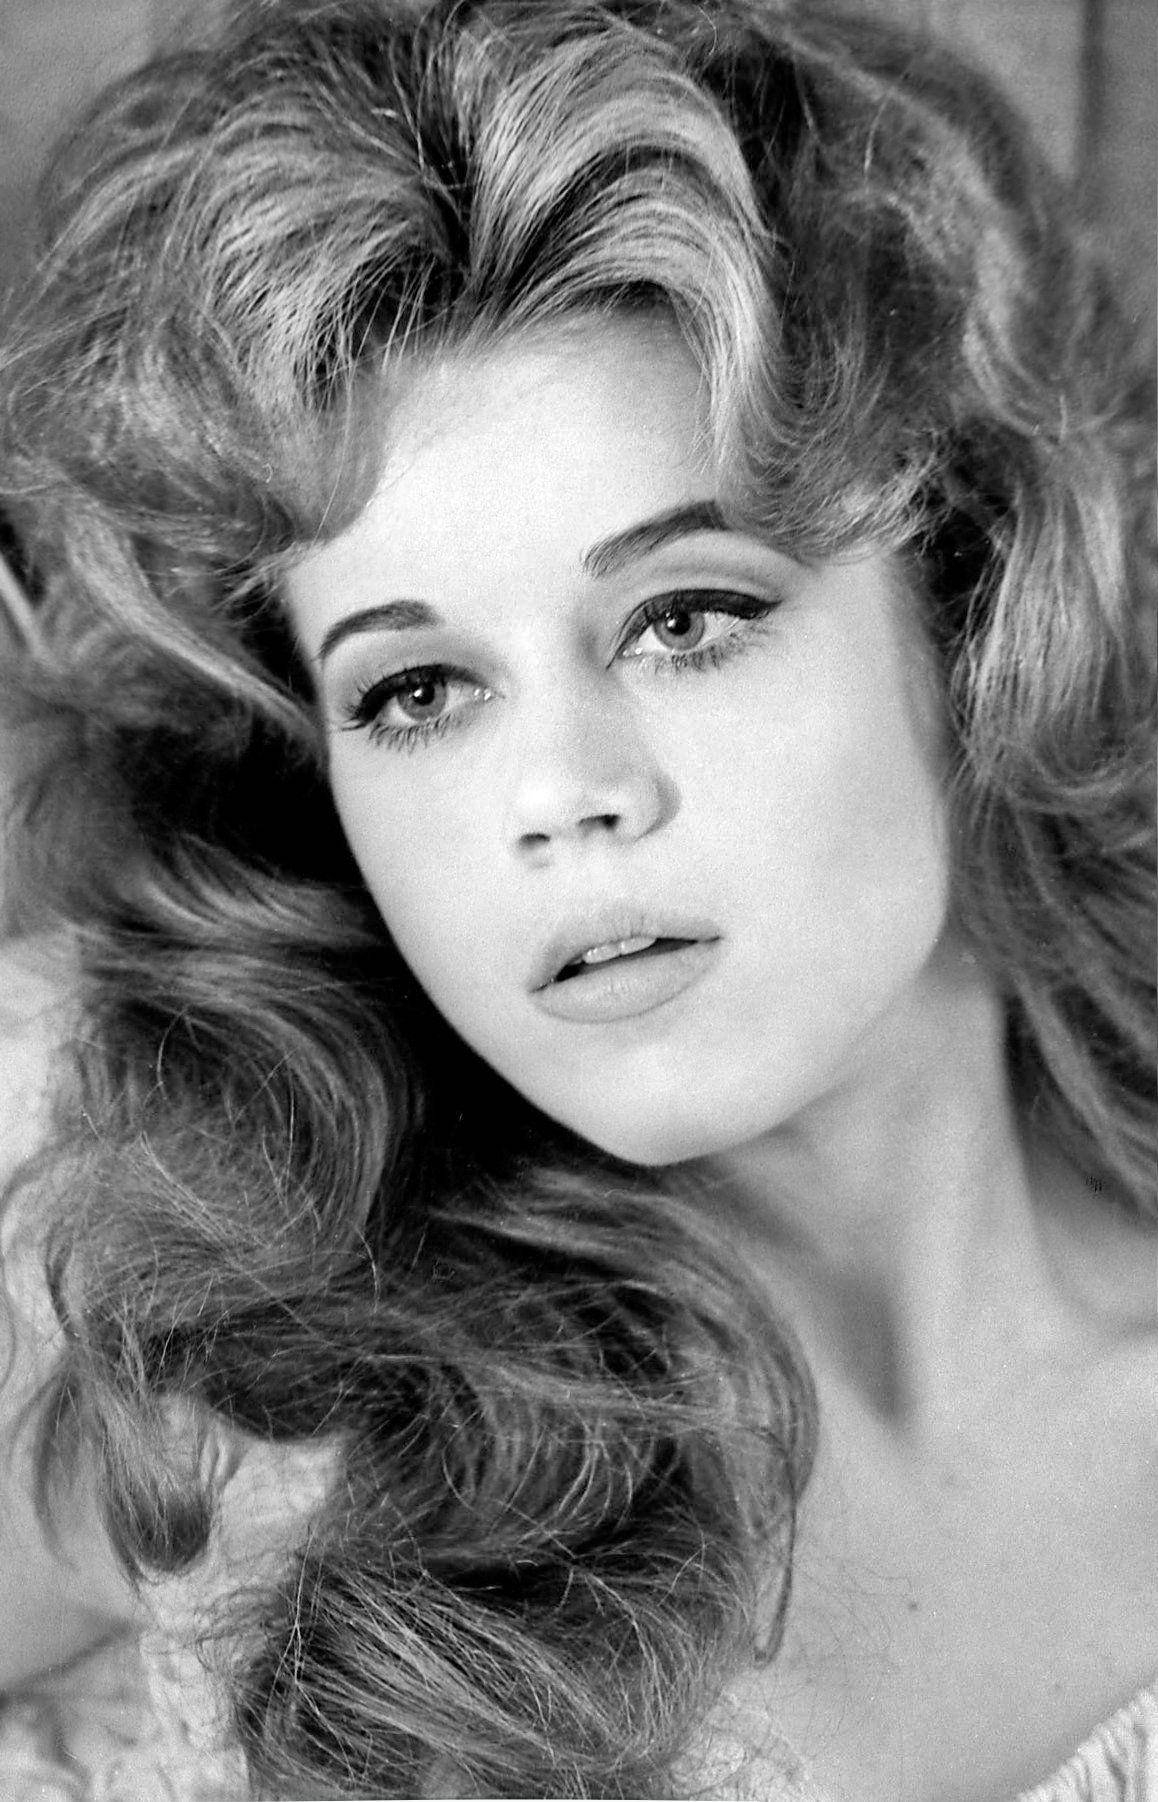 Amerikanischeschauspielerin - Junge Jane Fonda In Graustufen Wallpaper